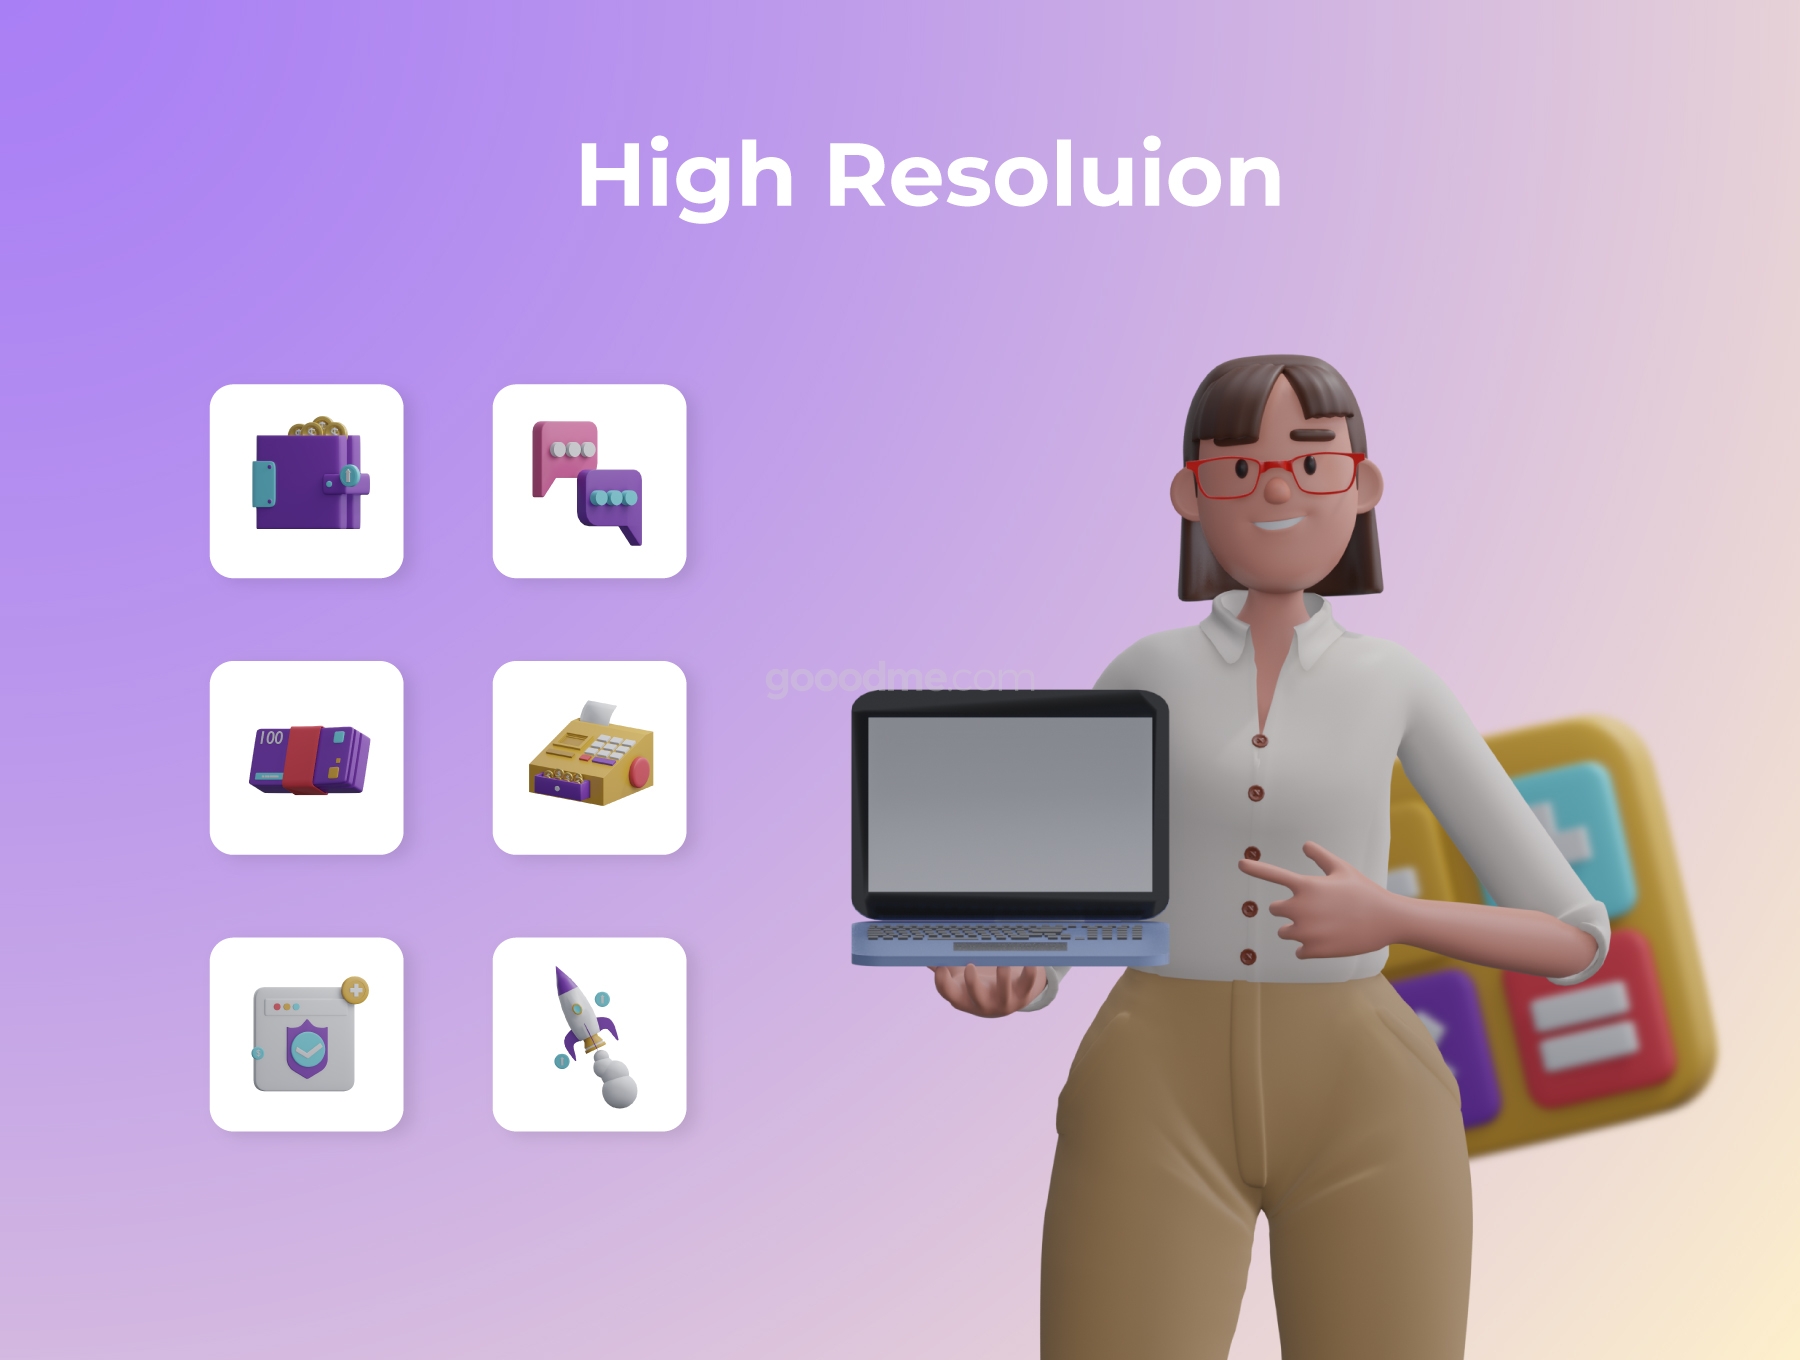 金融 3D 人物插图图标素材Financial 3D Character Illustration Pack